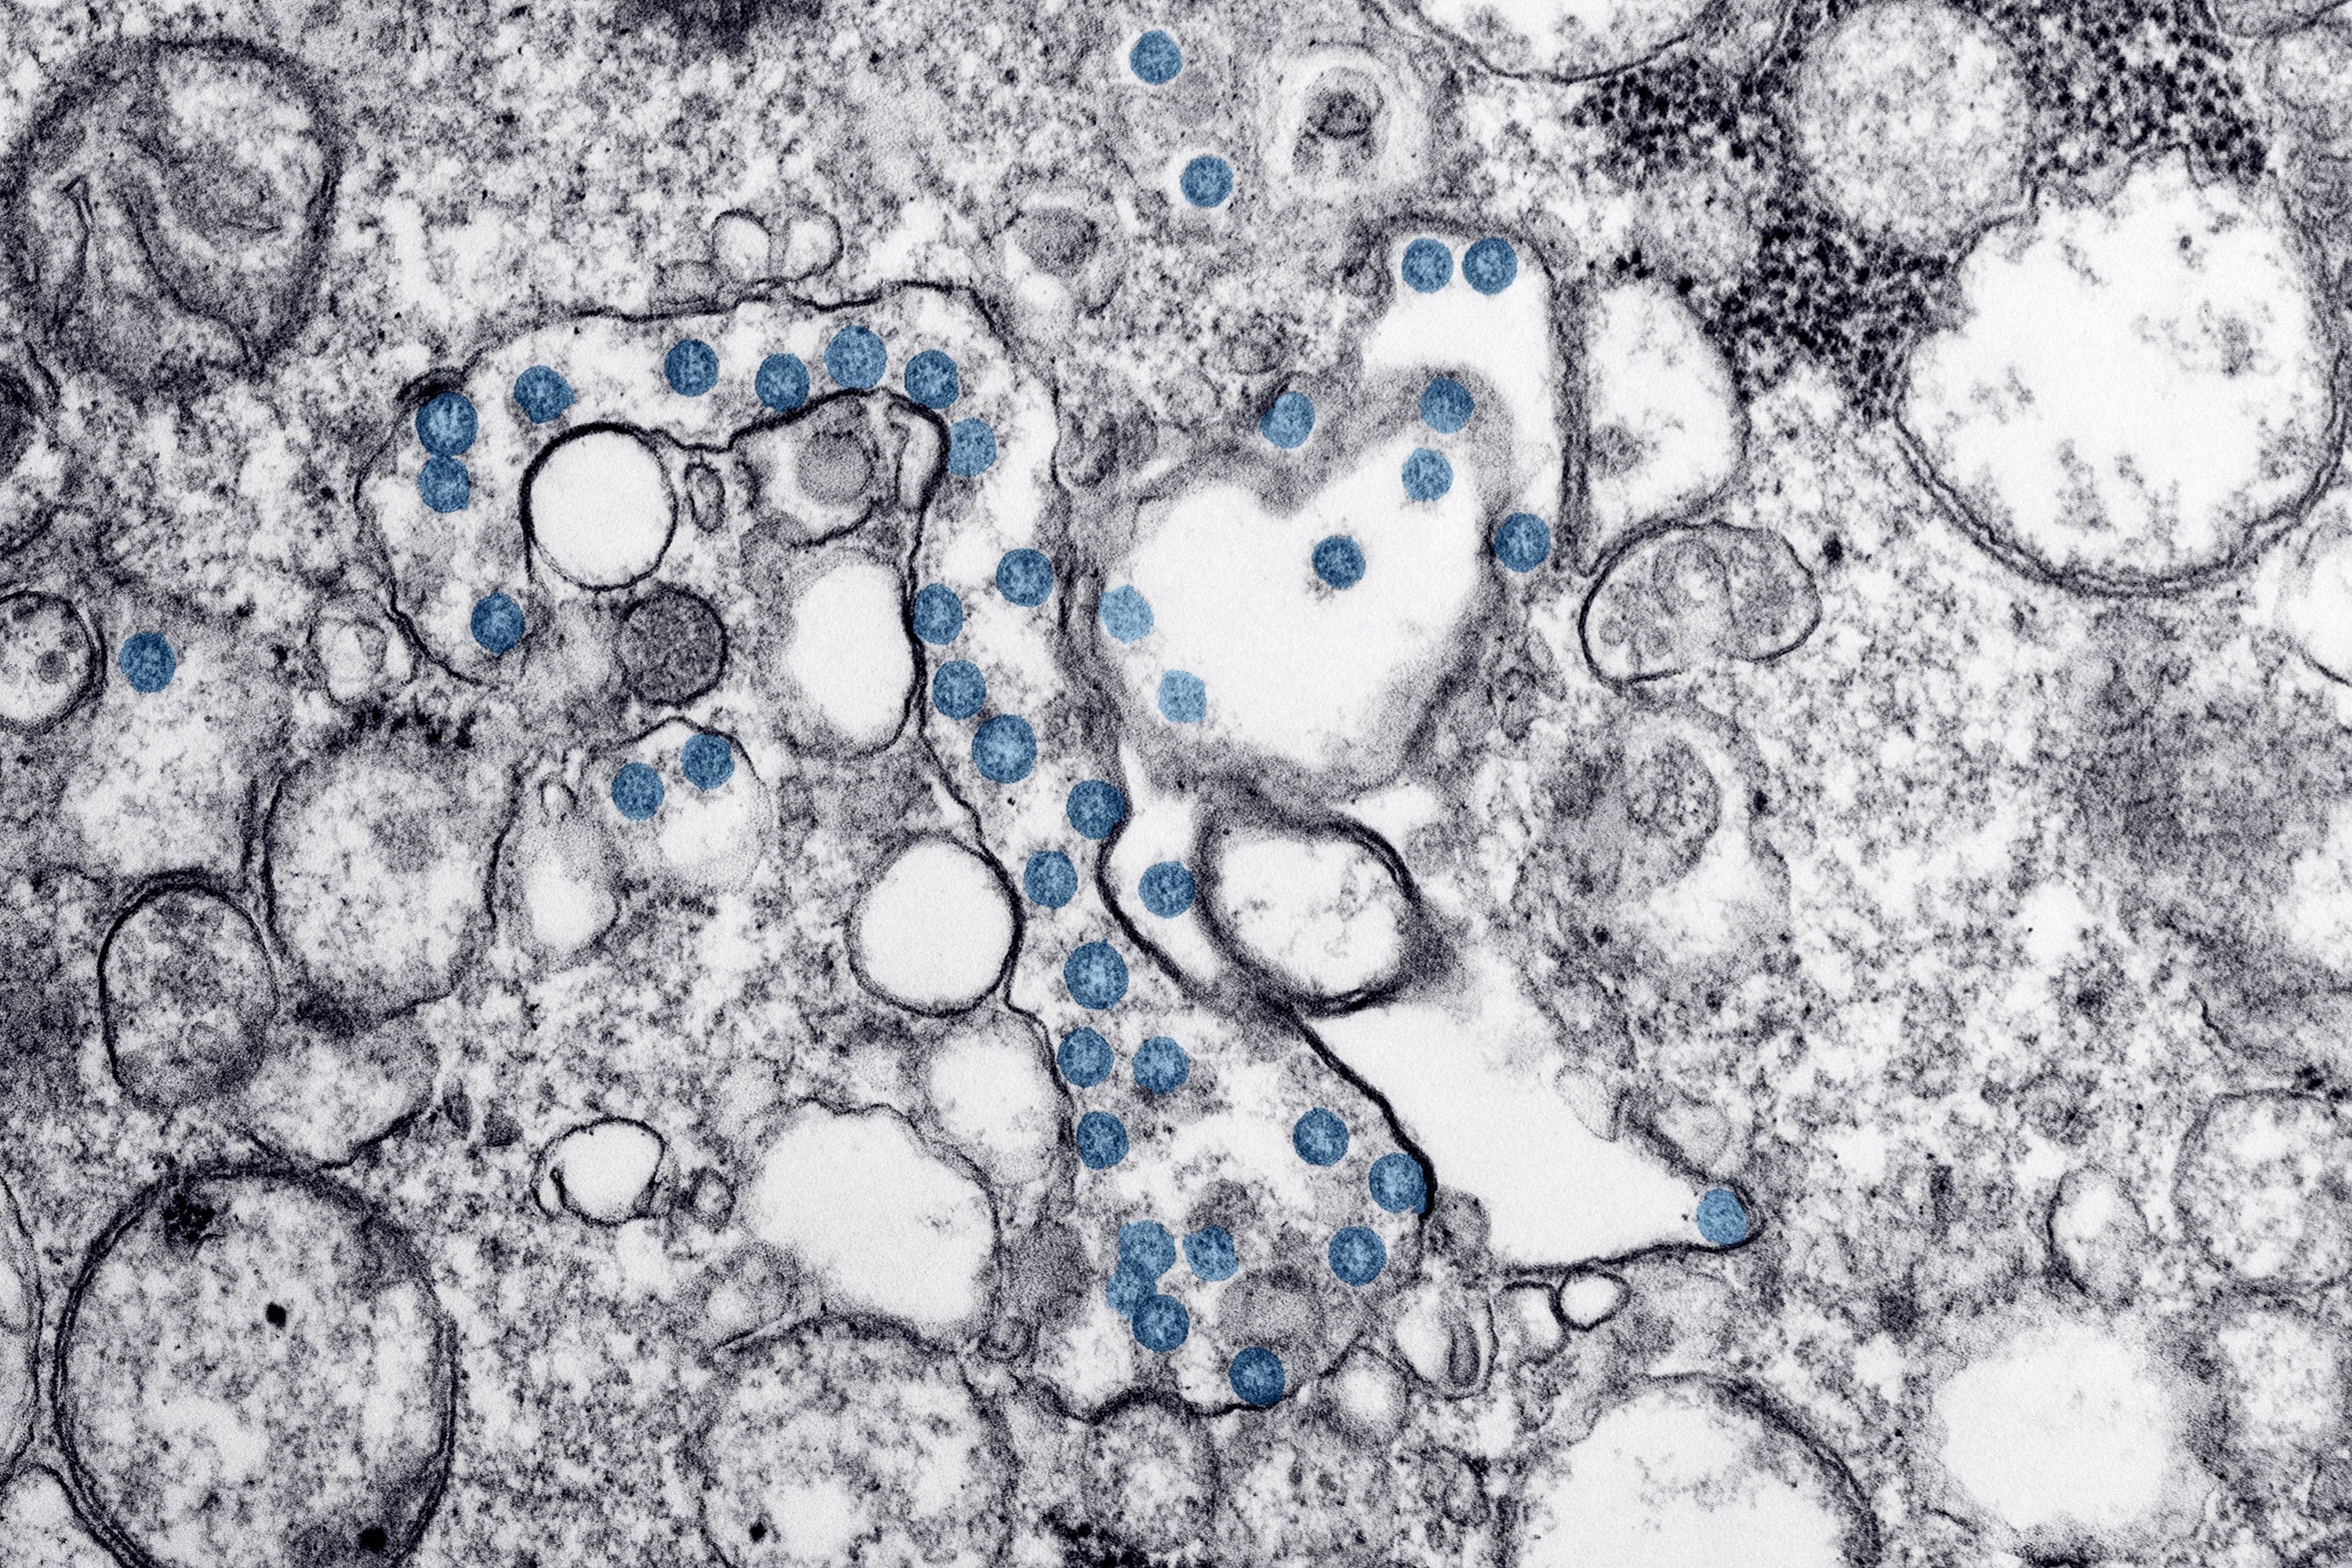 Cells seen through a microscope